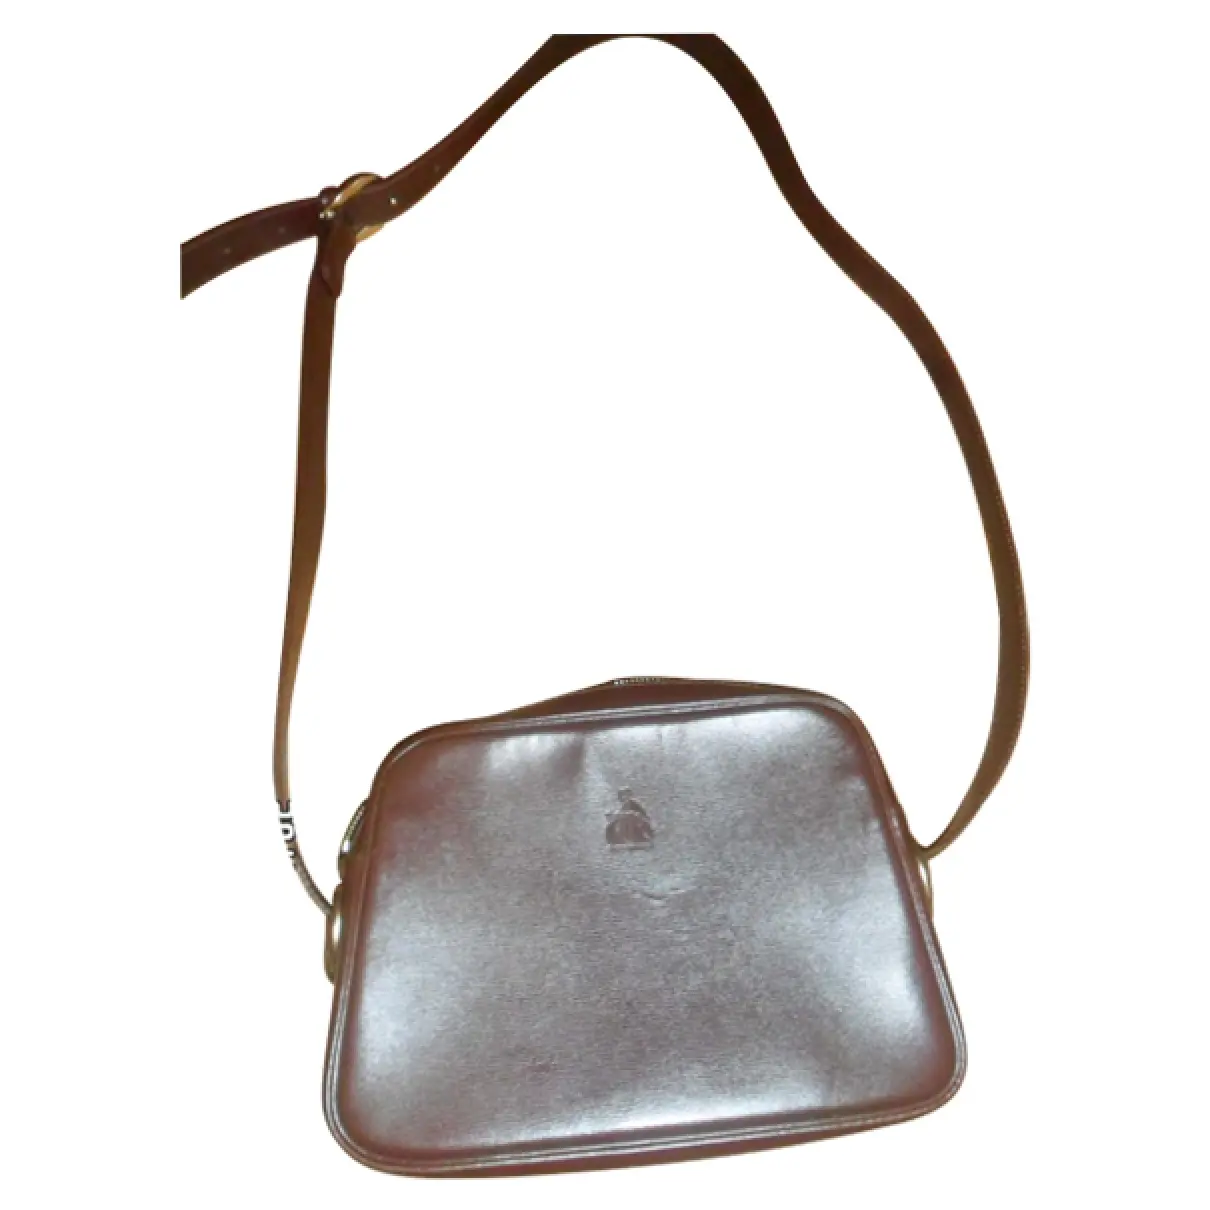 Lanvin VINTAGE STYLE BAG for sale - Vintage